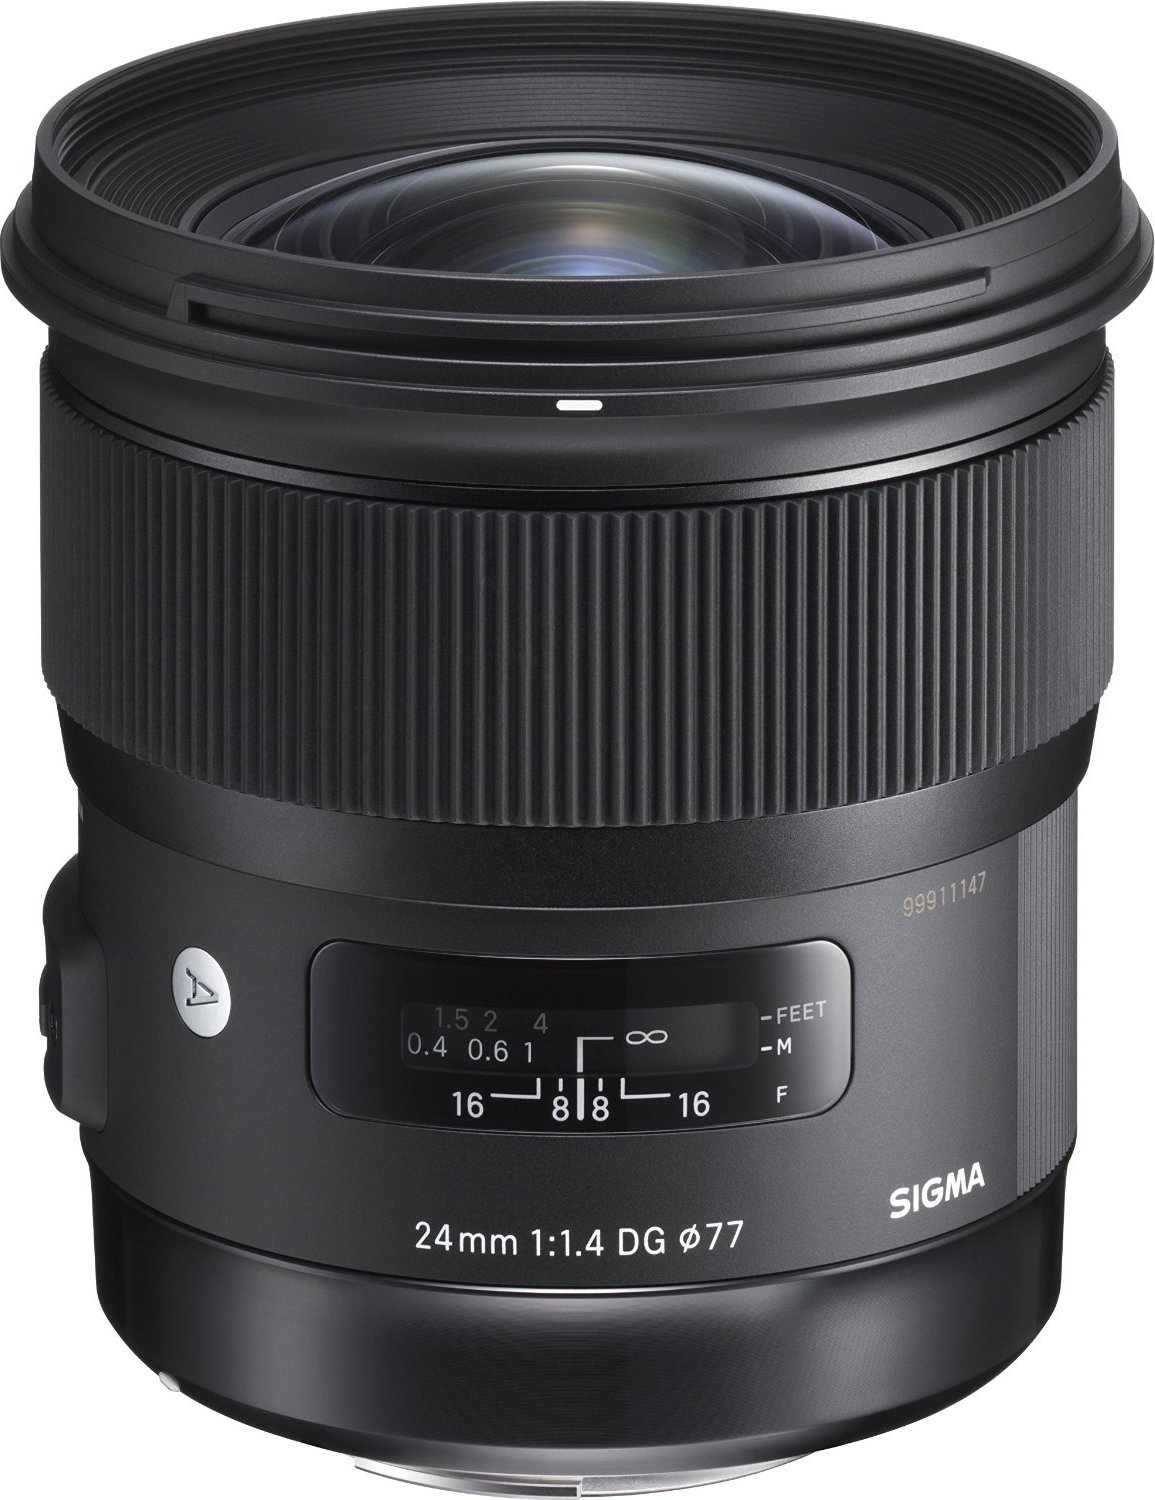 SIGMA シグマ Canon EFマウント レンズ 24mm F1.4 DG HSM 単焦点 広角 フルサイズ Art 一眼レフ 専用